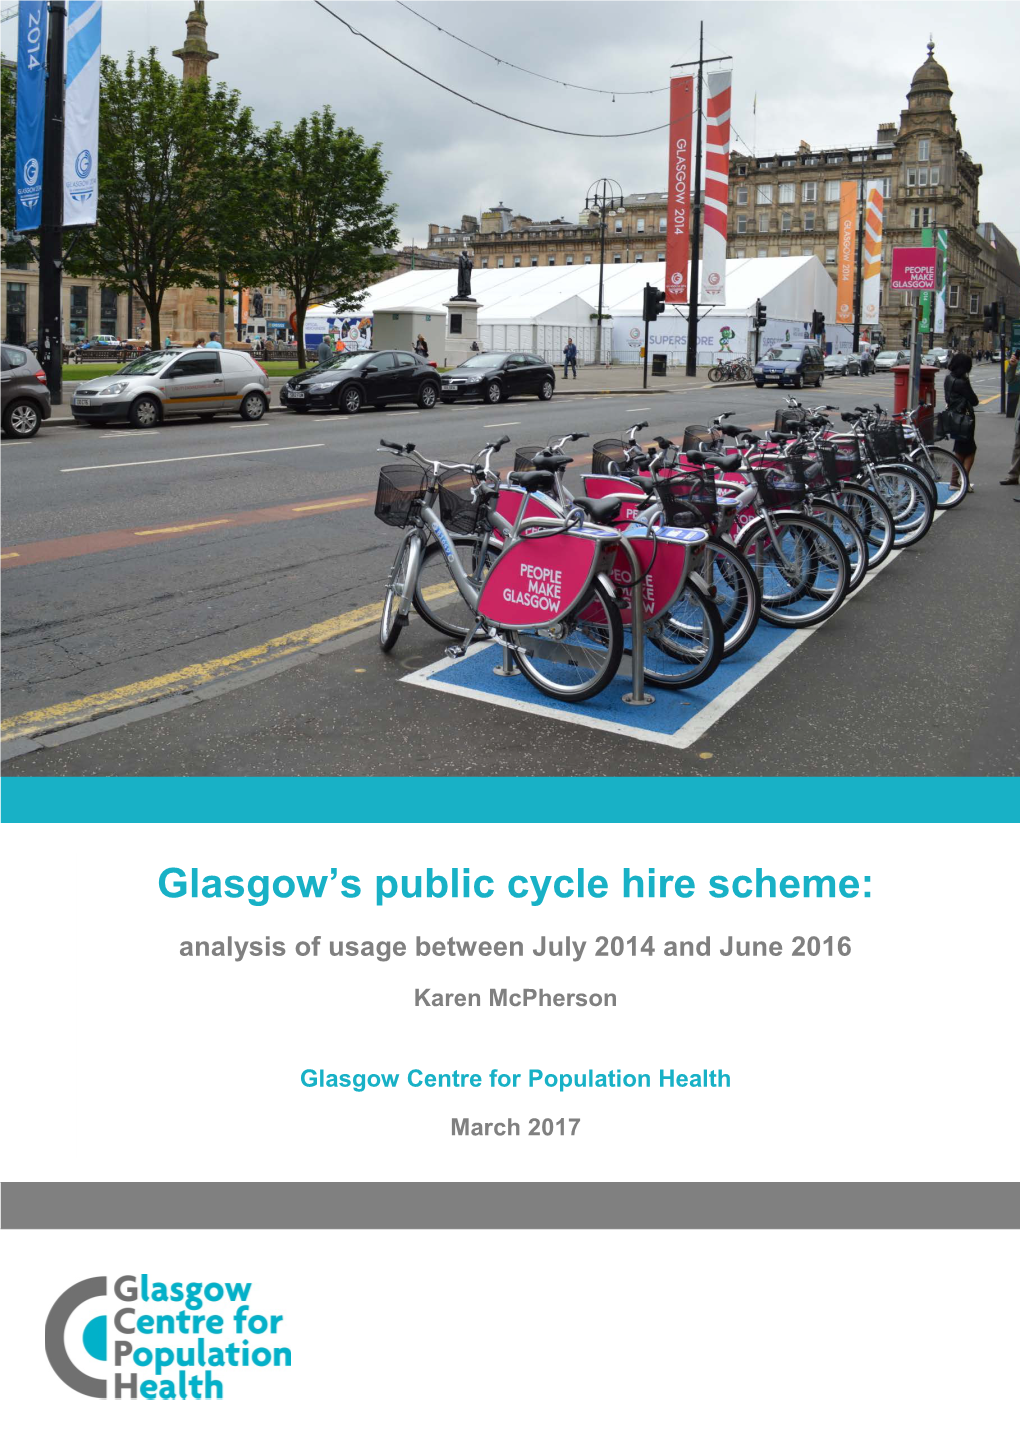 Glasgow's Public Cycle Hire Scheme